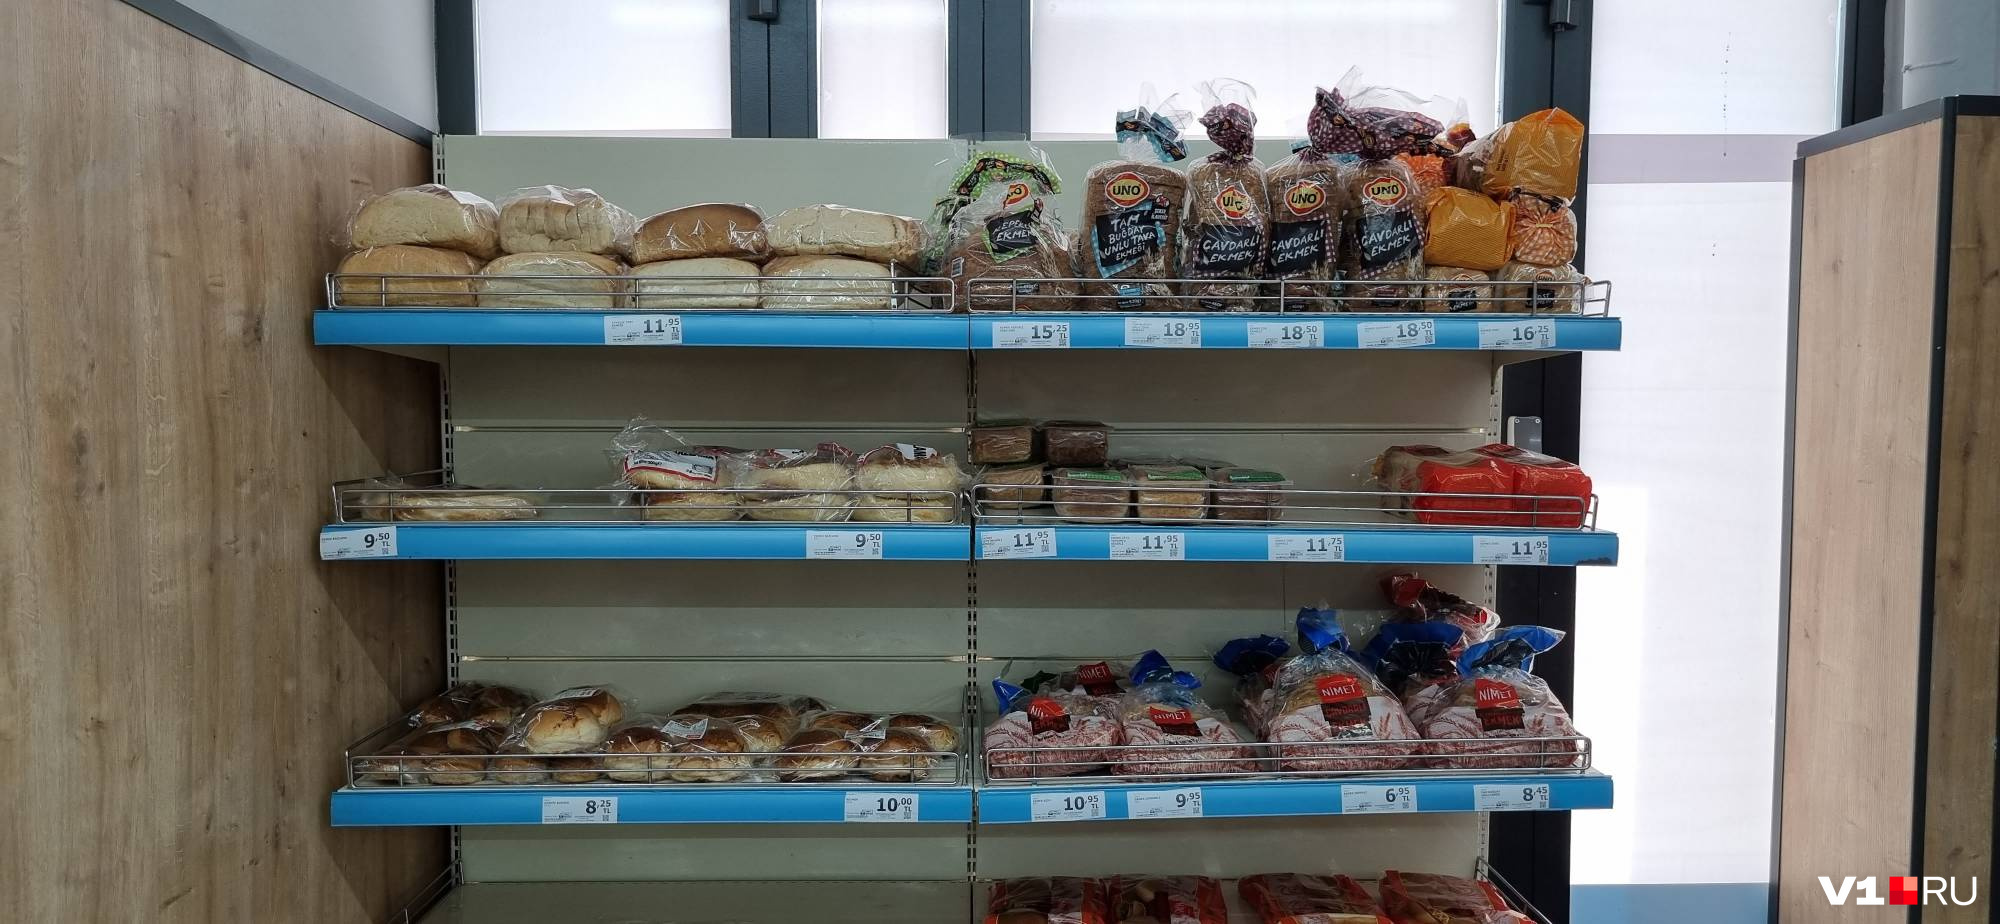 Самый дешевый белый хлеб турецкие хозяйки разбирают практически сразу